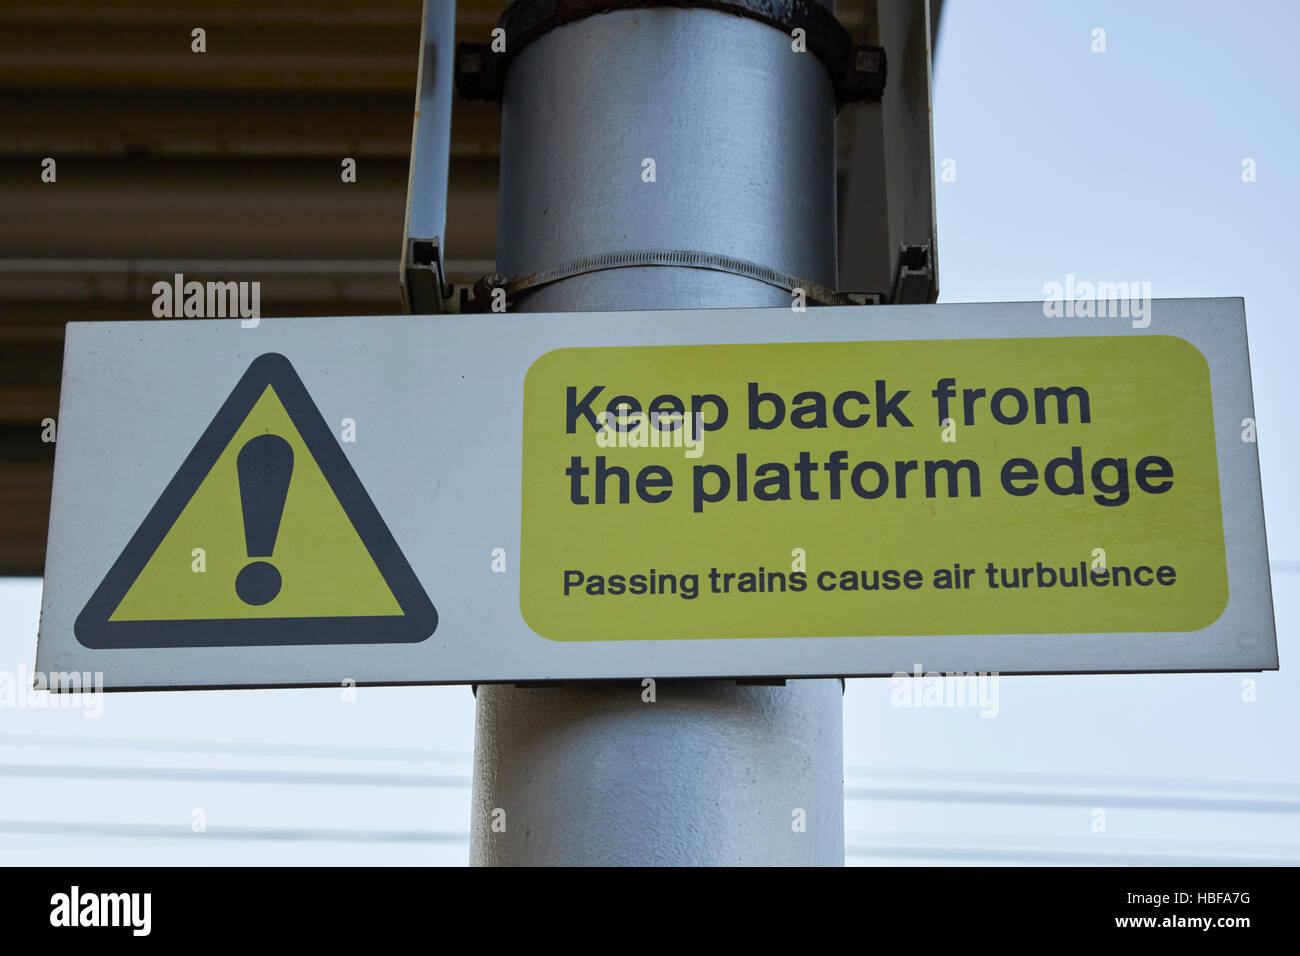 Stazione ferroviaria piattaforma segno di avvertimento tenere indietro dal bordo piattaforma passano i treni causare turbolenza di aria Foto Stock